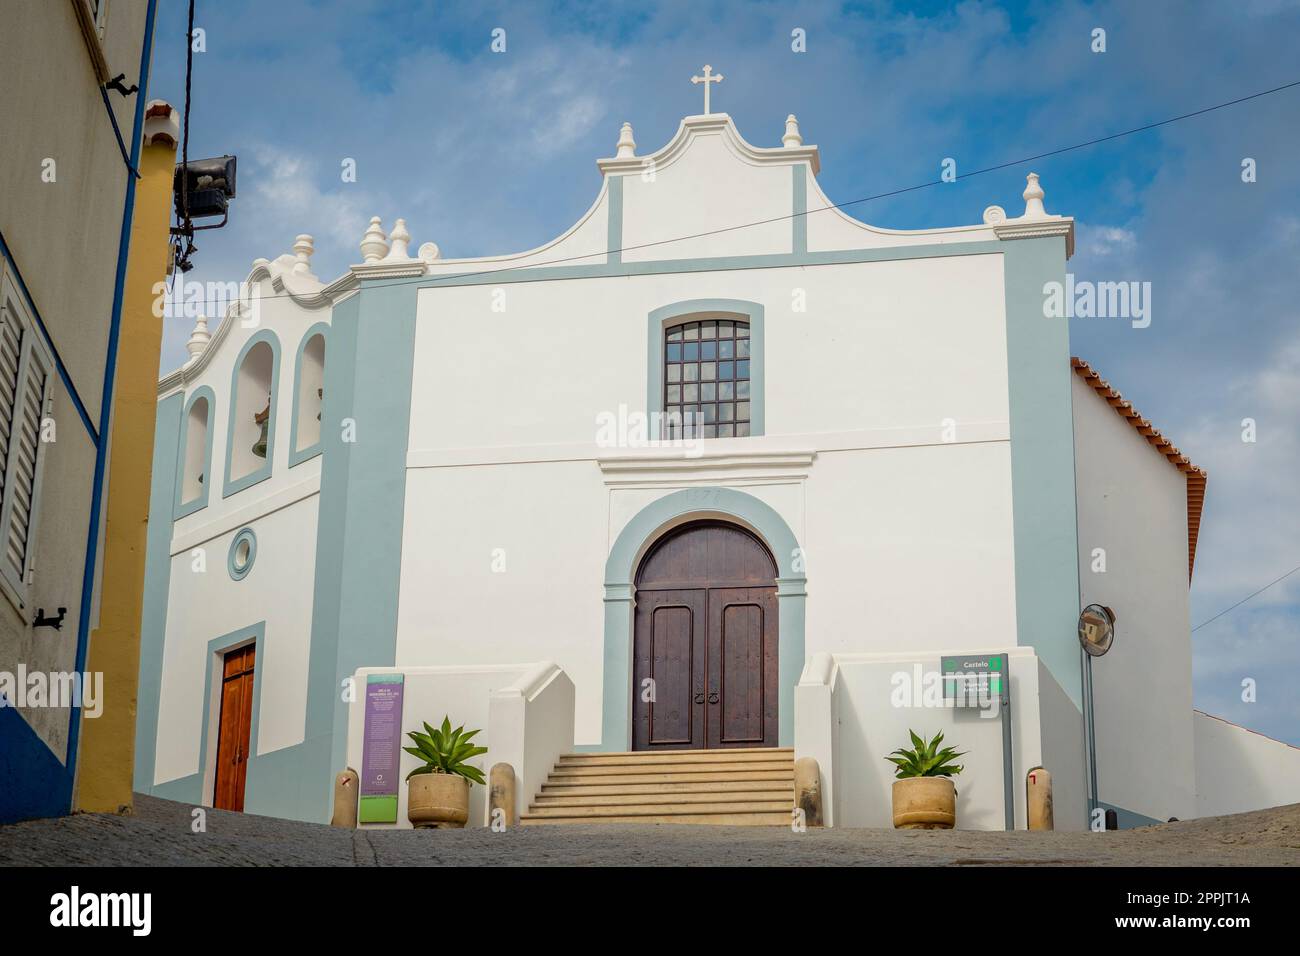 View on Igreja da Misericordia, church of Aljezur in Algarve, Portugal Stock Photo